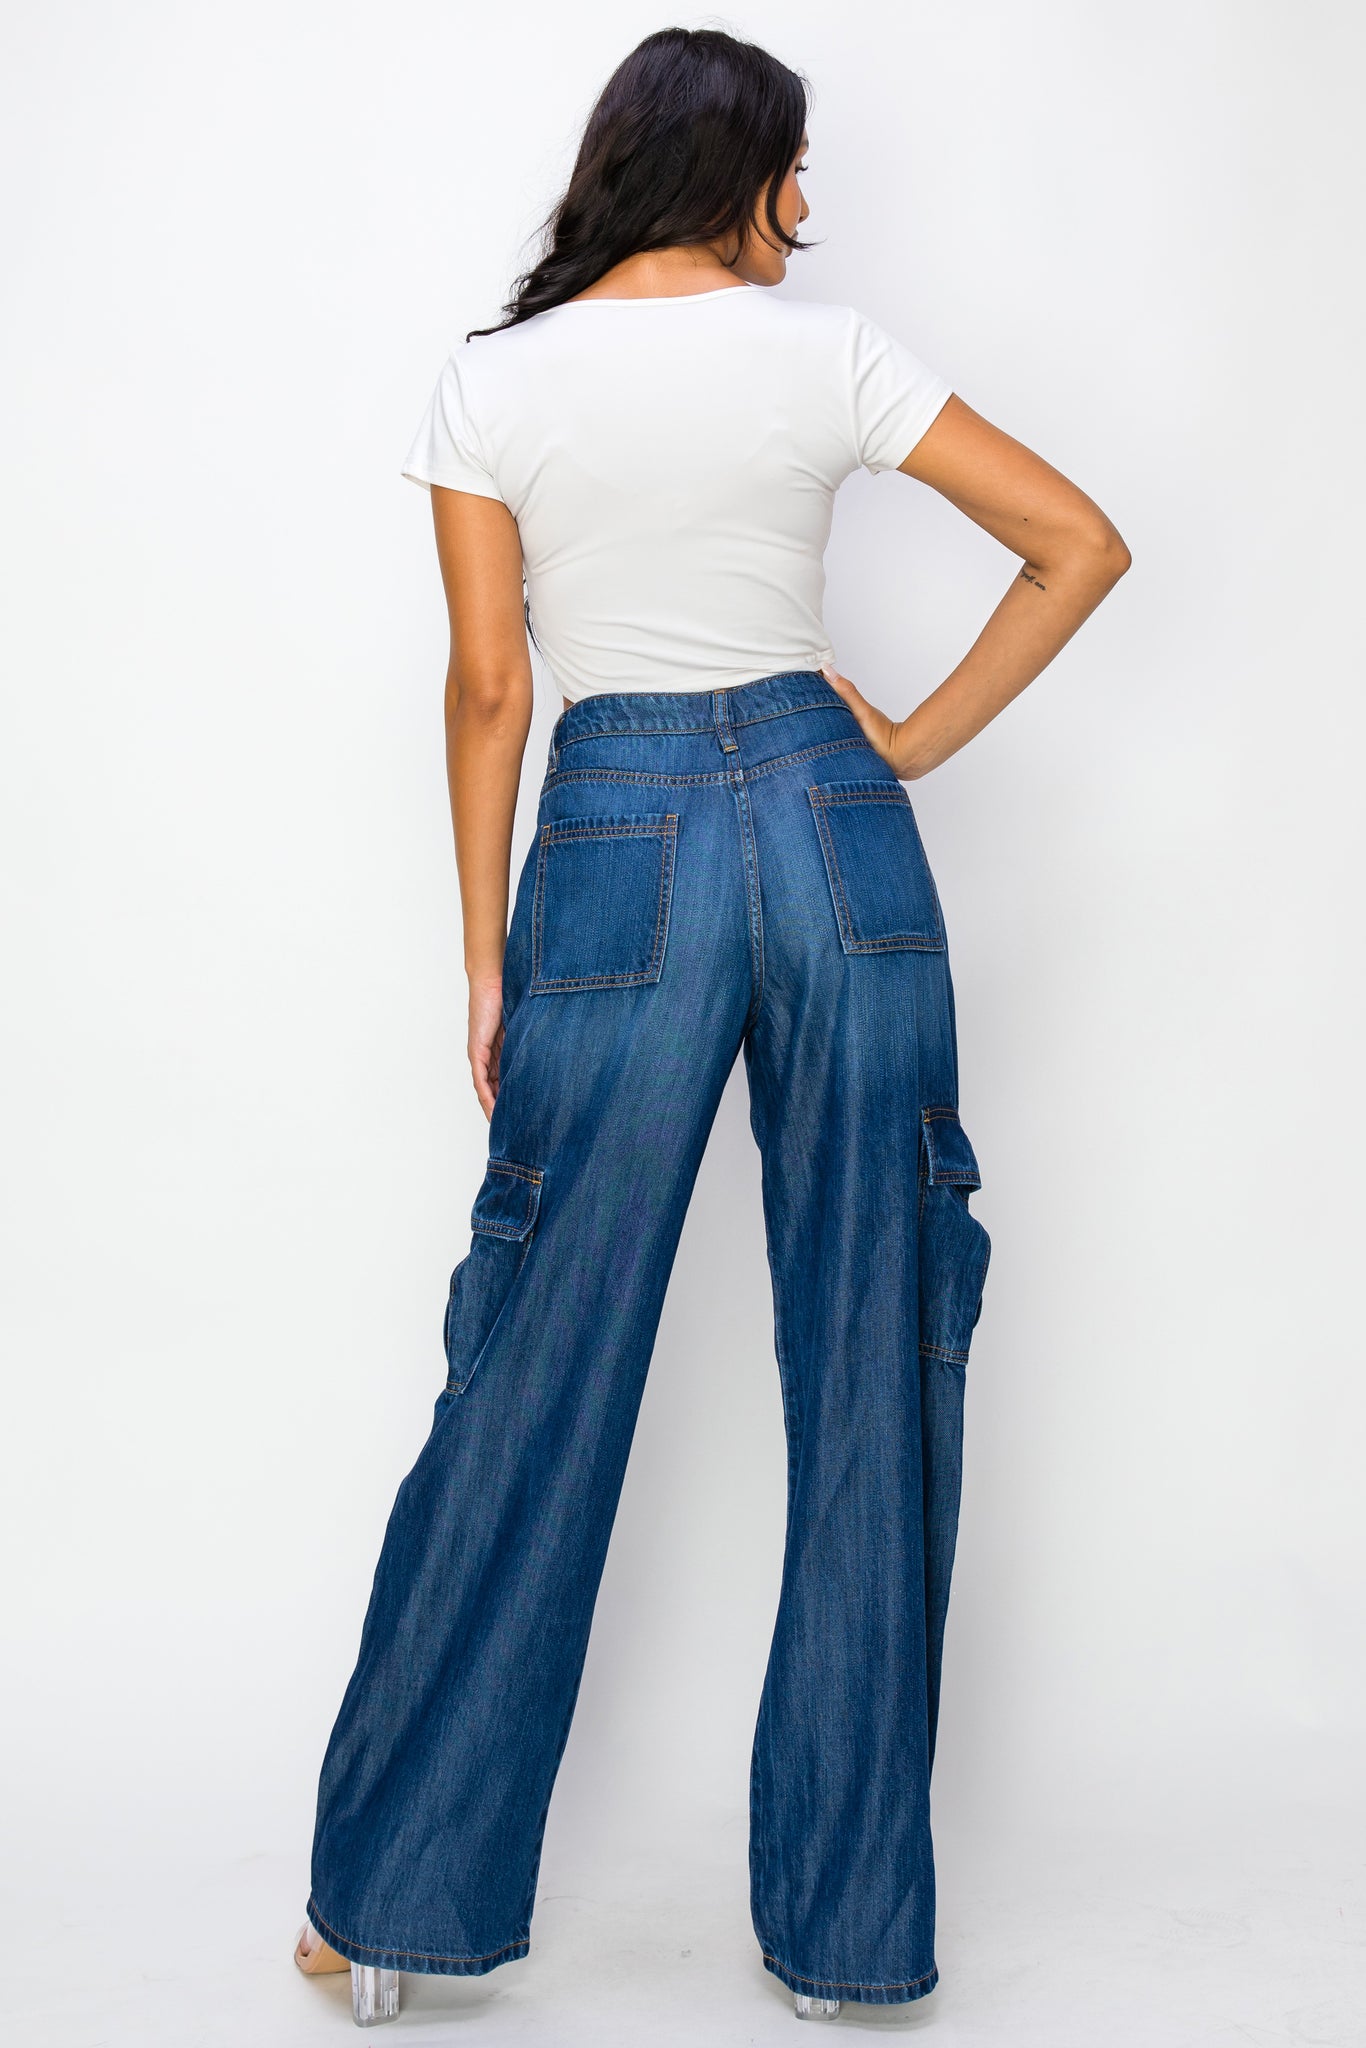 40627 Women's High waisted Light-weight Cargo Jeans